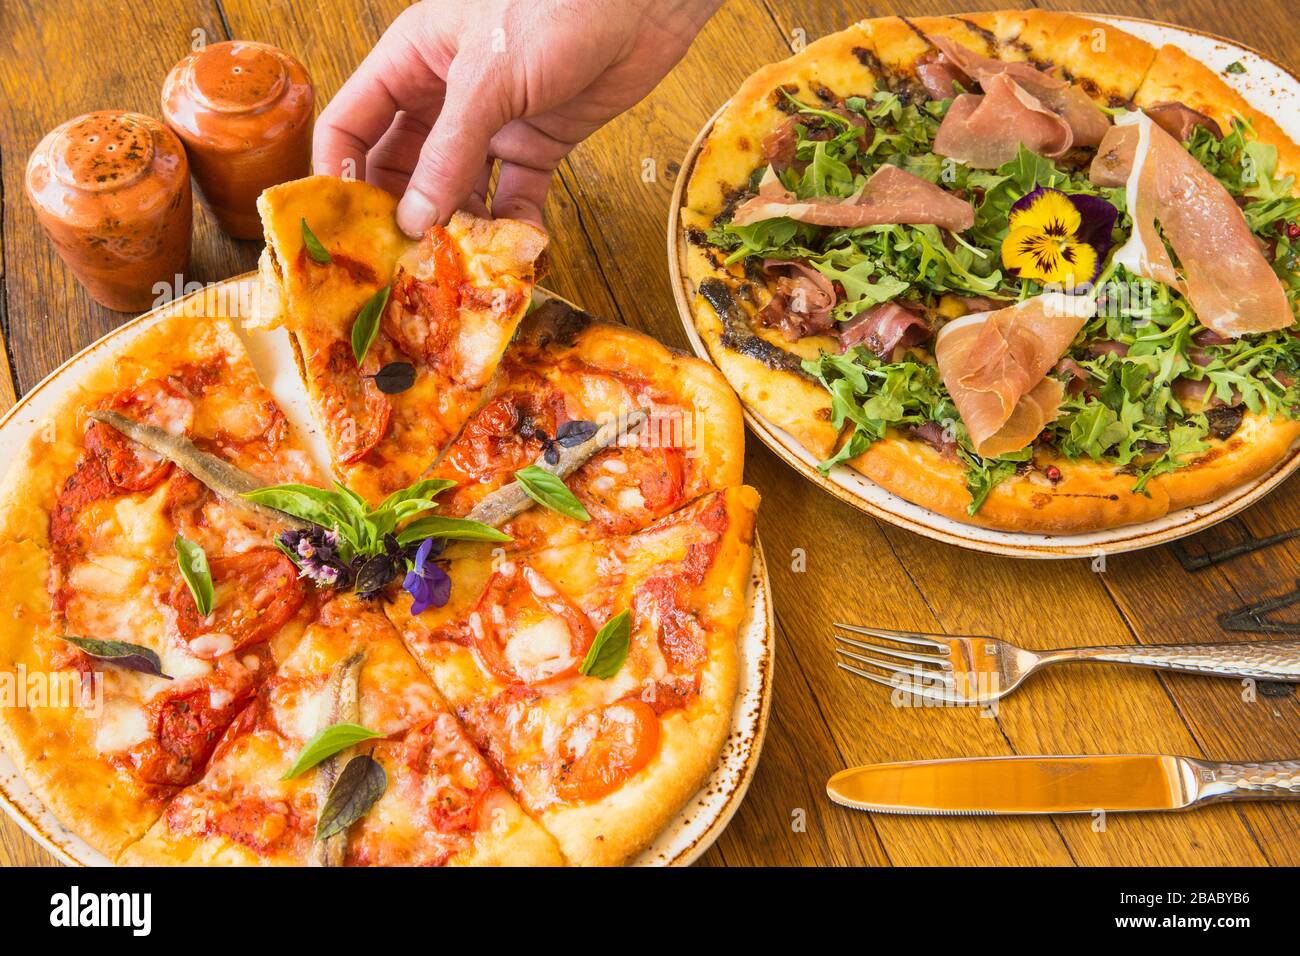 margherita Pizza und eine Auswahl an Proscuitto- und Nugulapizzen Stockfoto